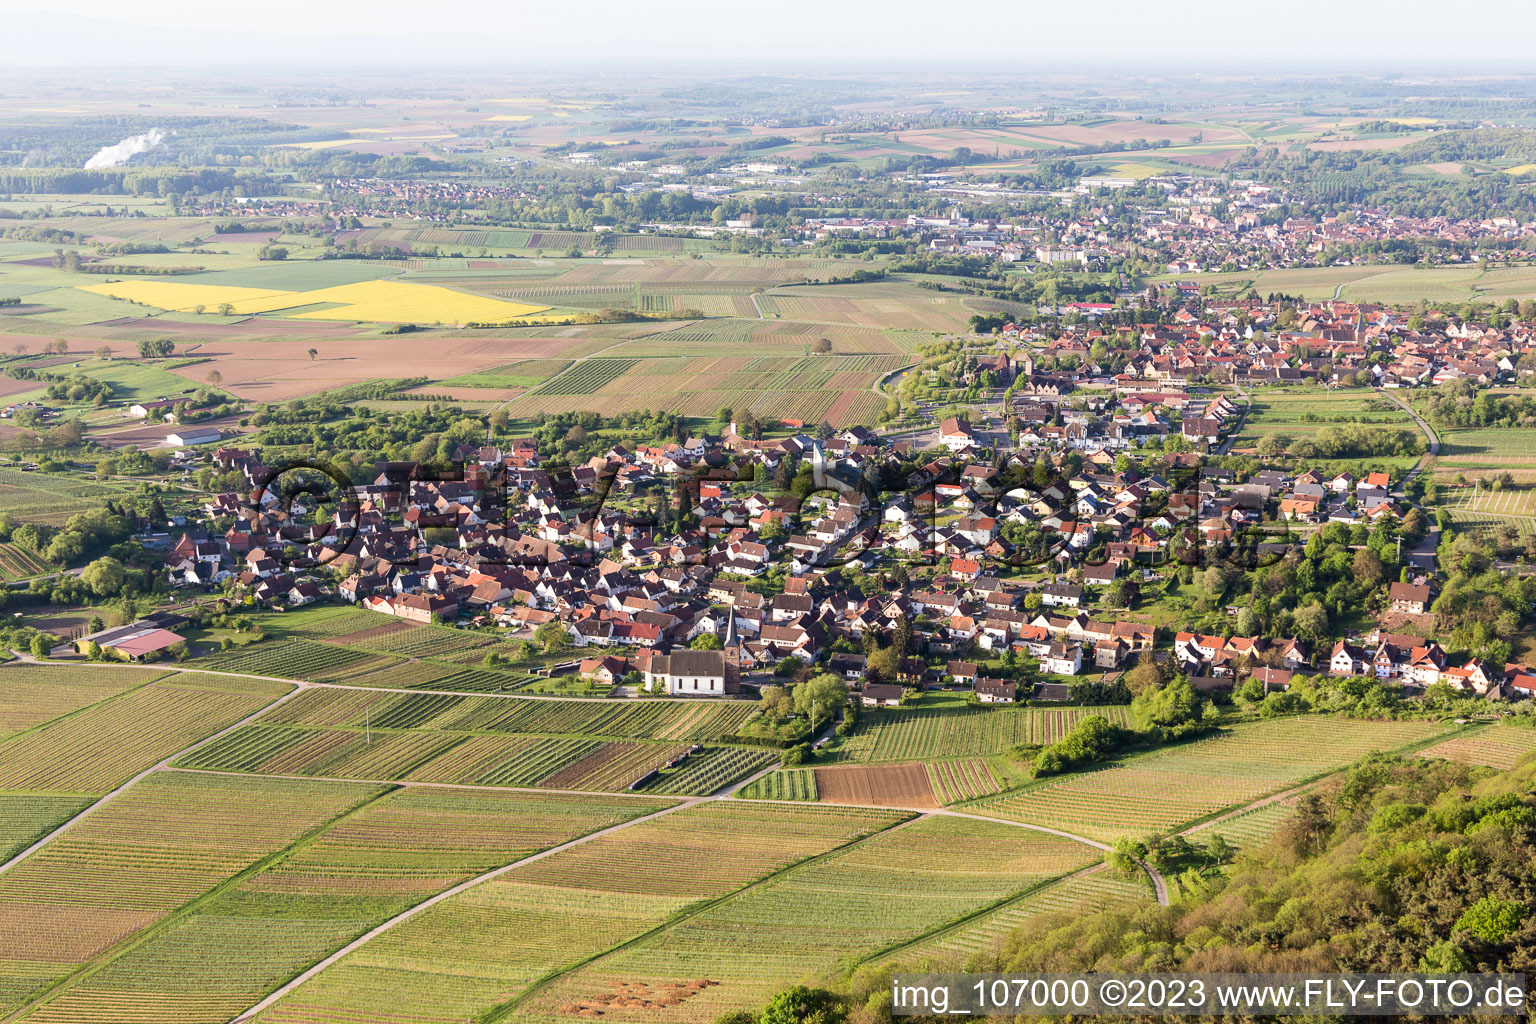 District Rechtenbach in Schweigen-Rechtenbach in the state Rhineland-Palatinate, Germany from the plane